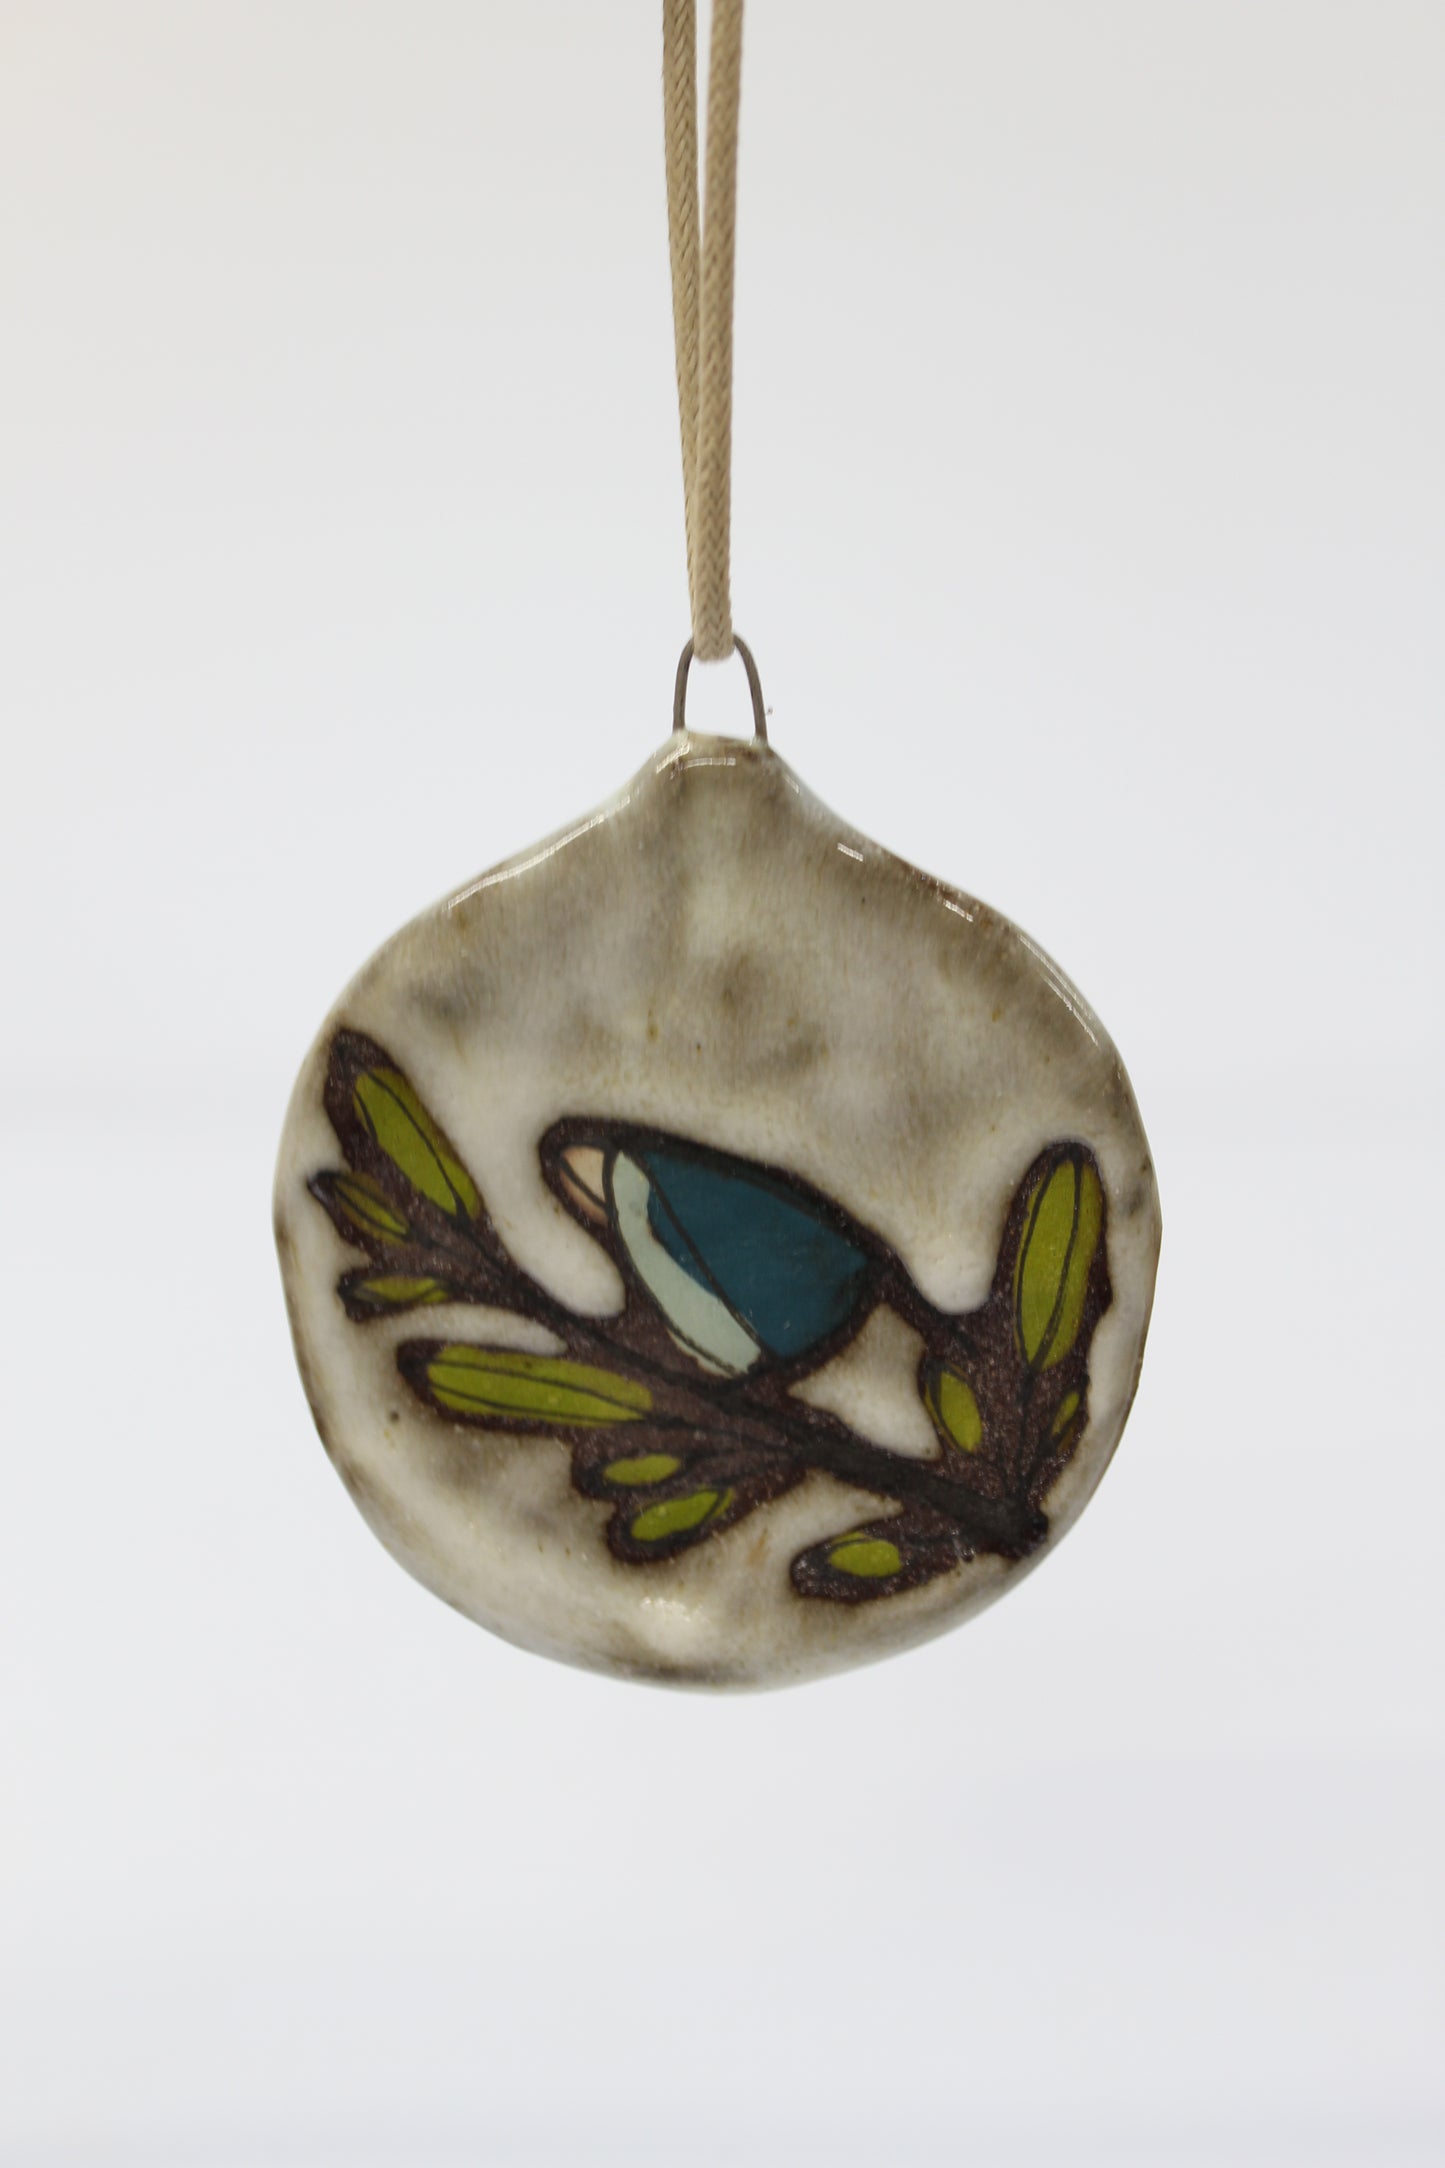 41. Teal Bird Flat Ornament. 3" x 2.5"